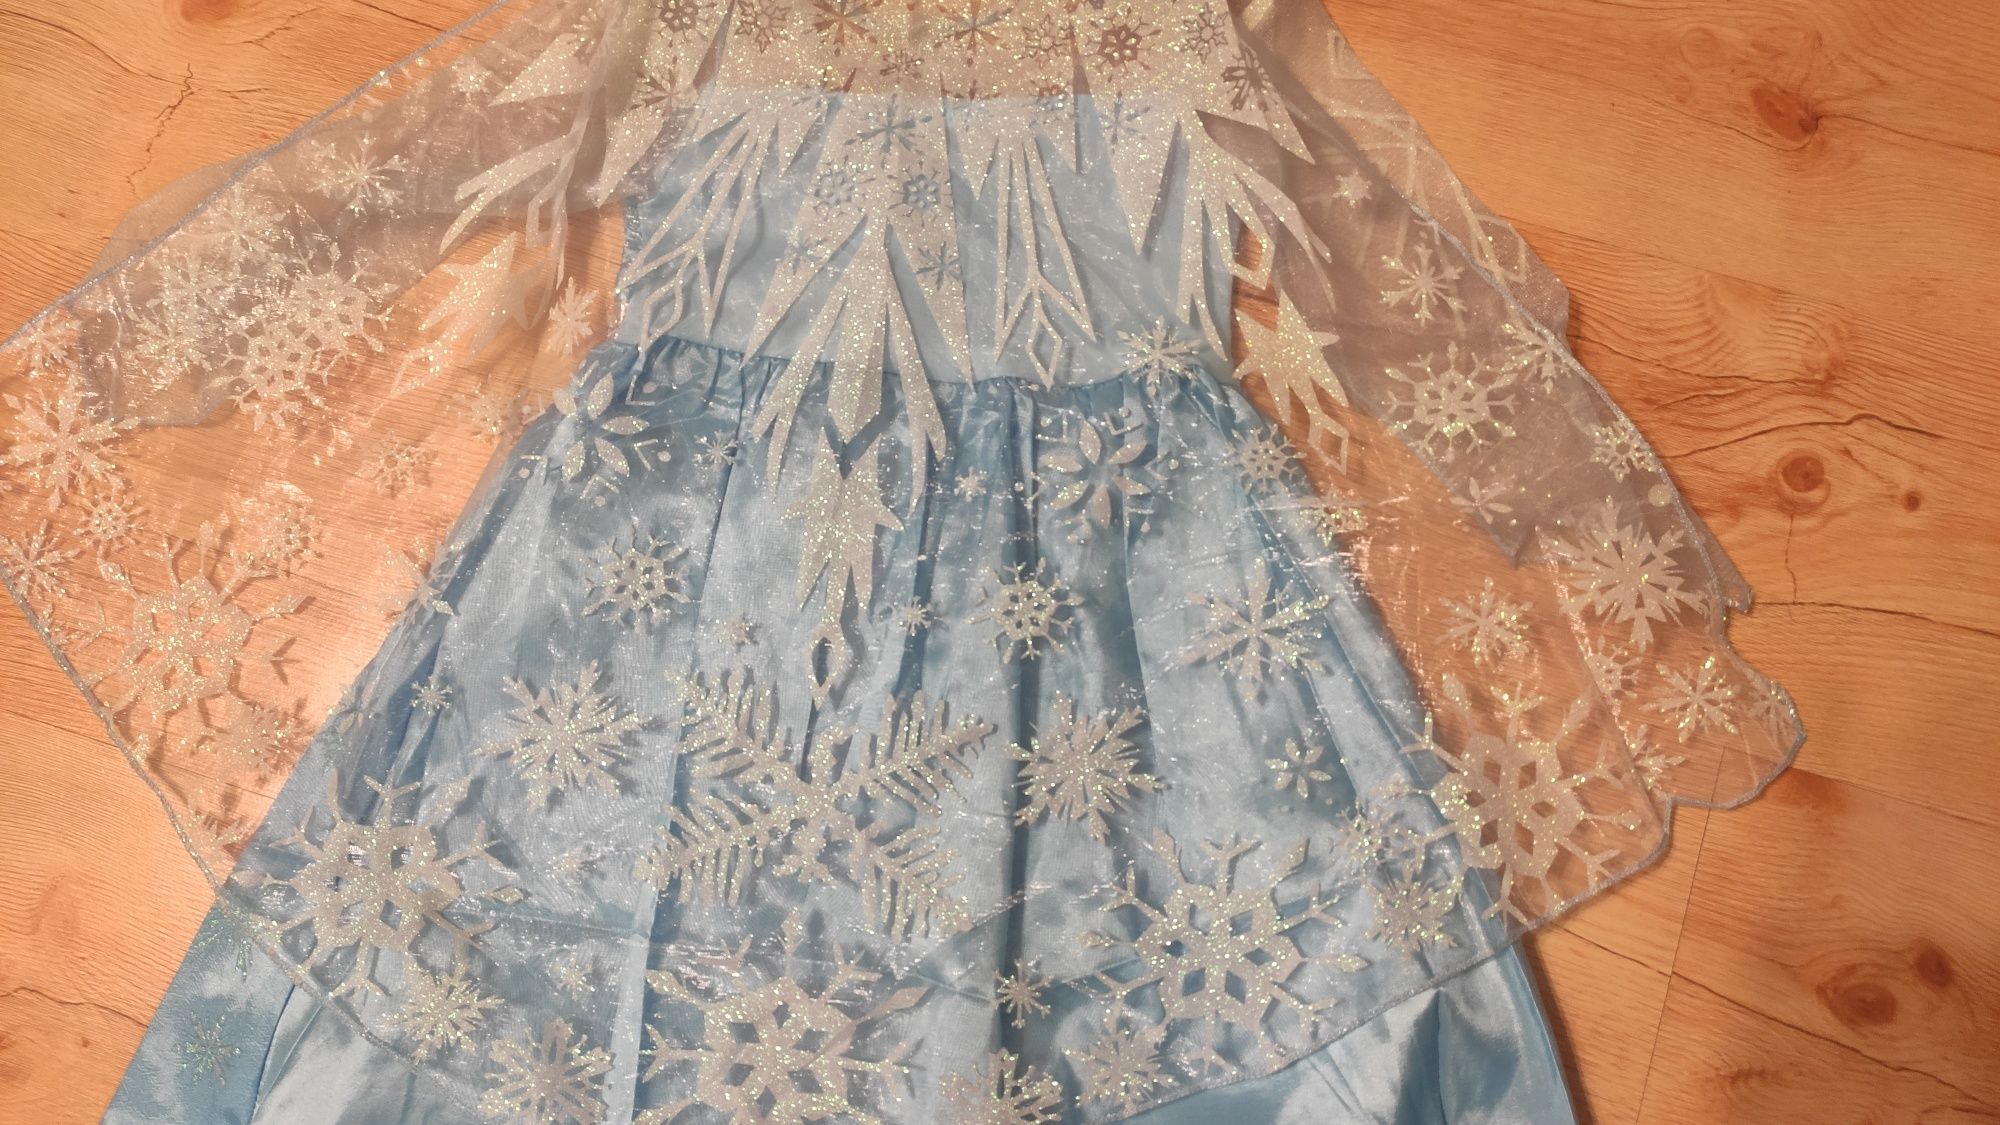 Elsa Elza kraina lodu Frozen sukienka strój karnawałowy bal 104